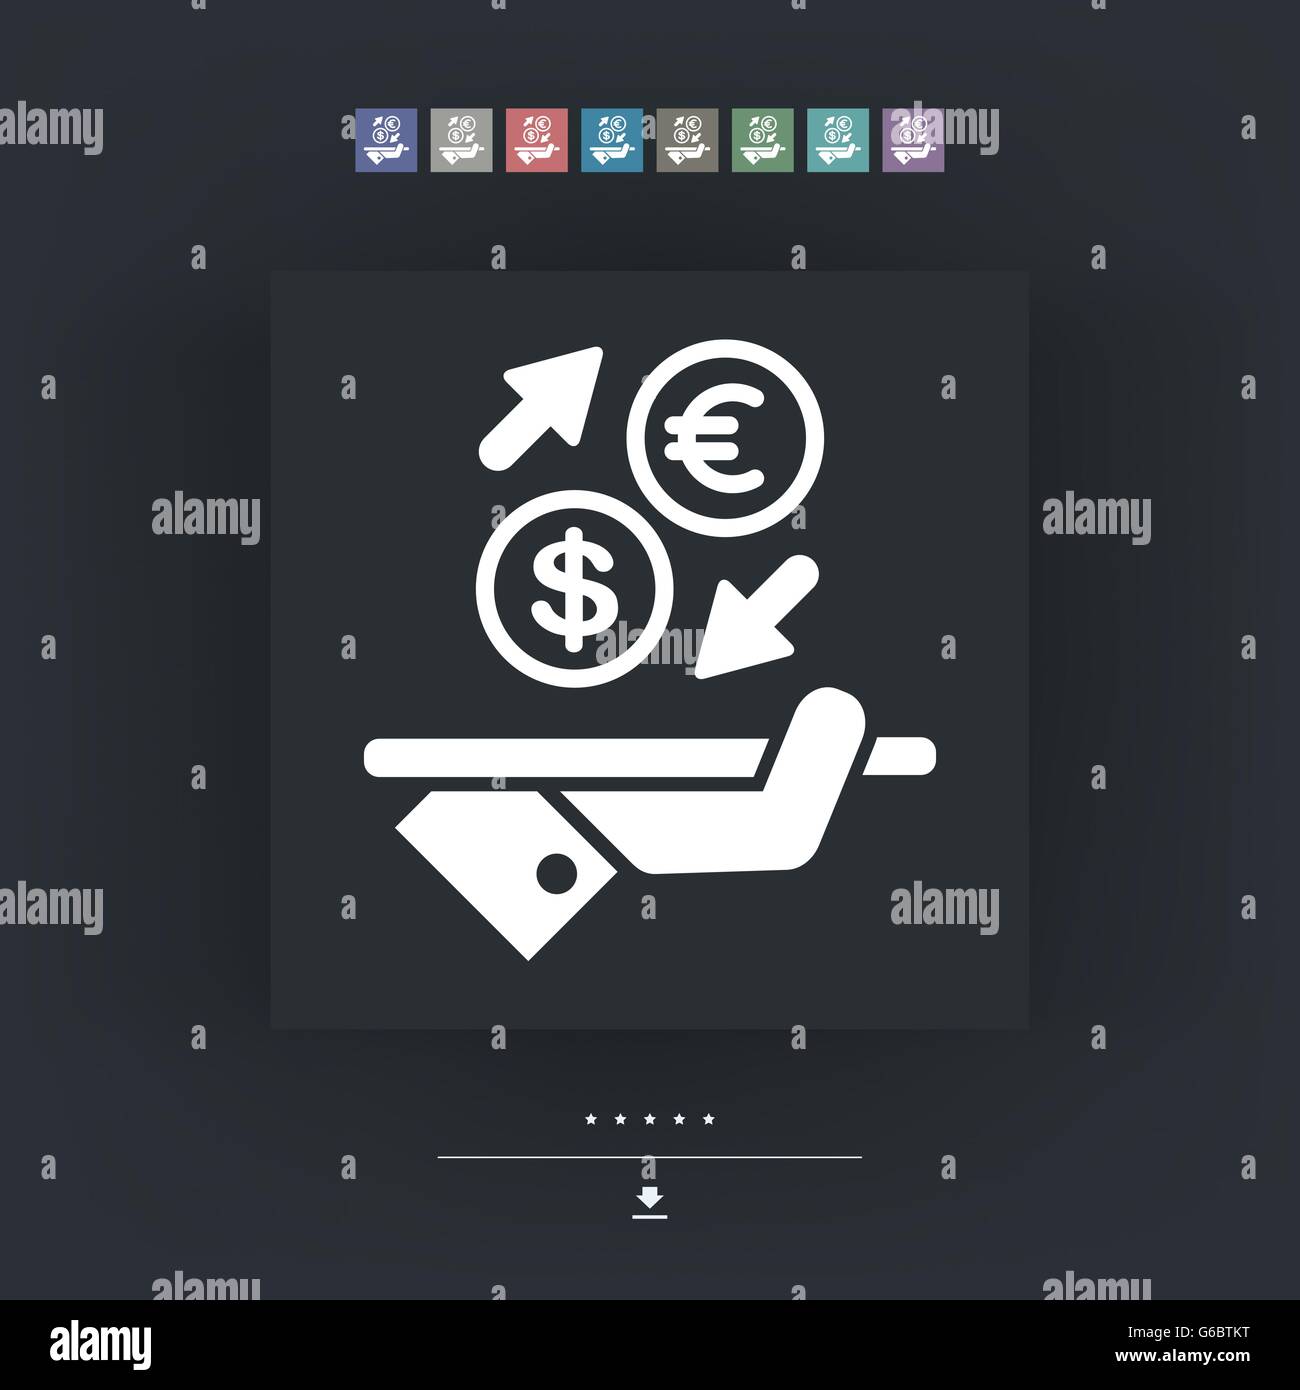 Euro dollar foreign currency exchange icon Banque de photographies et  d'images à haute résolution - Alamy